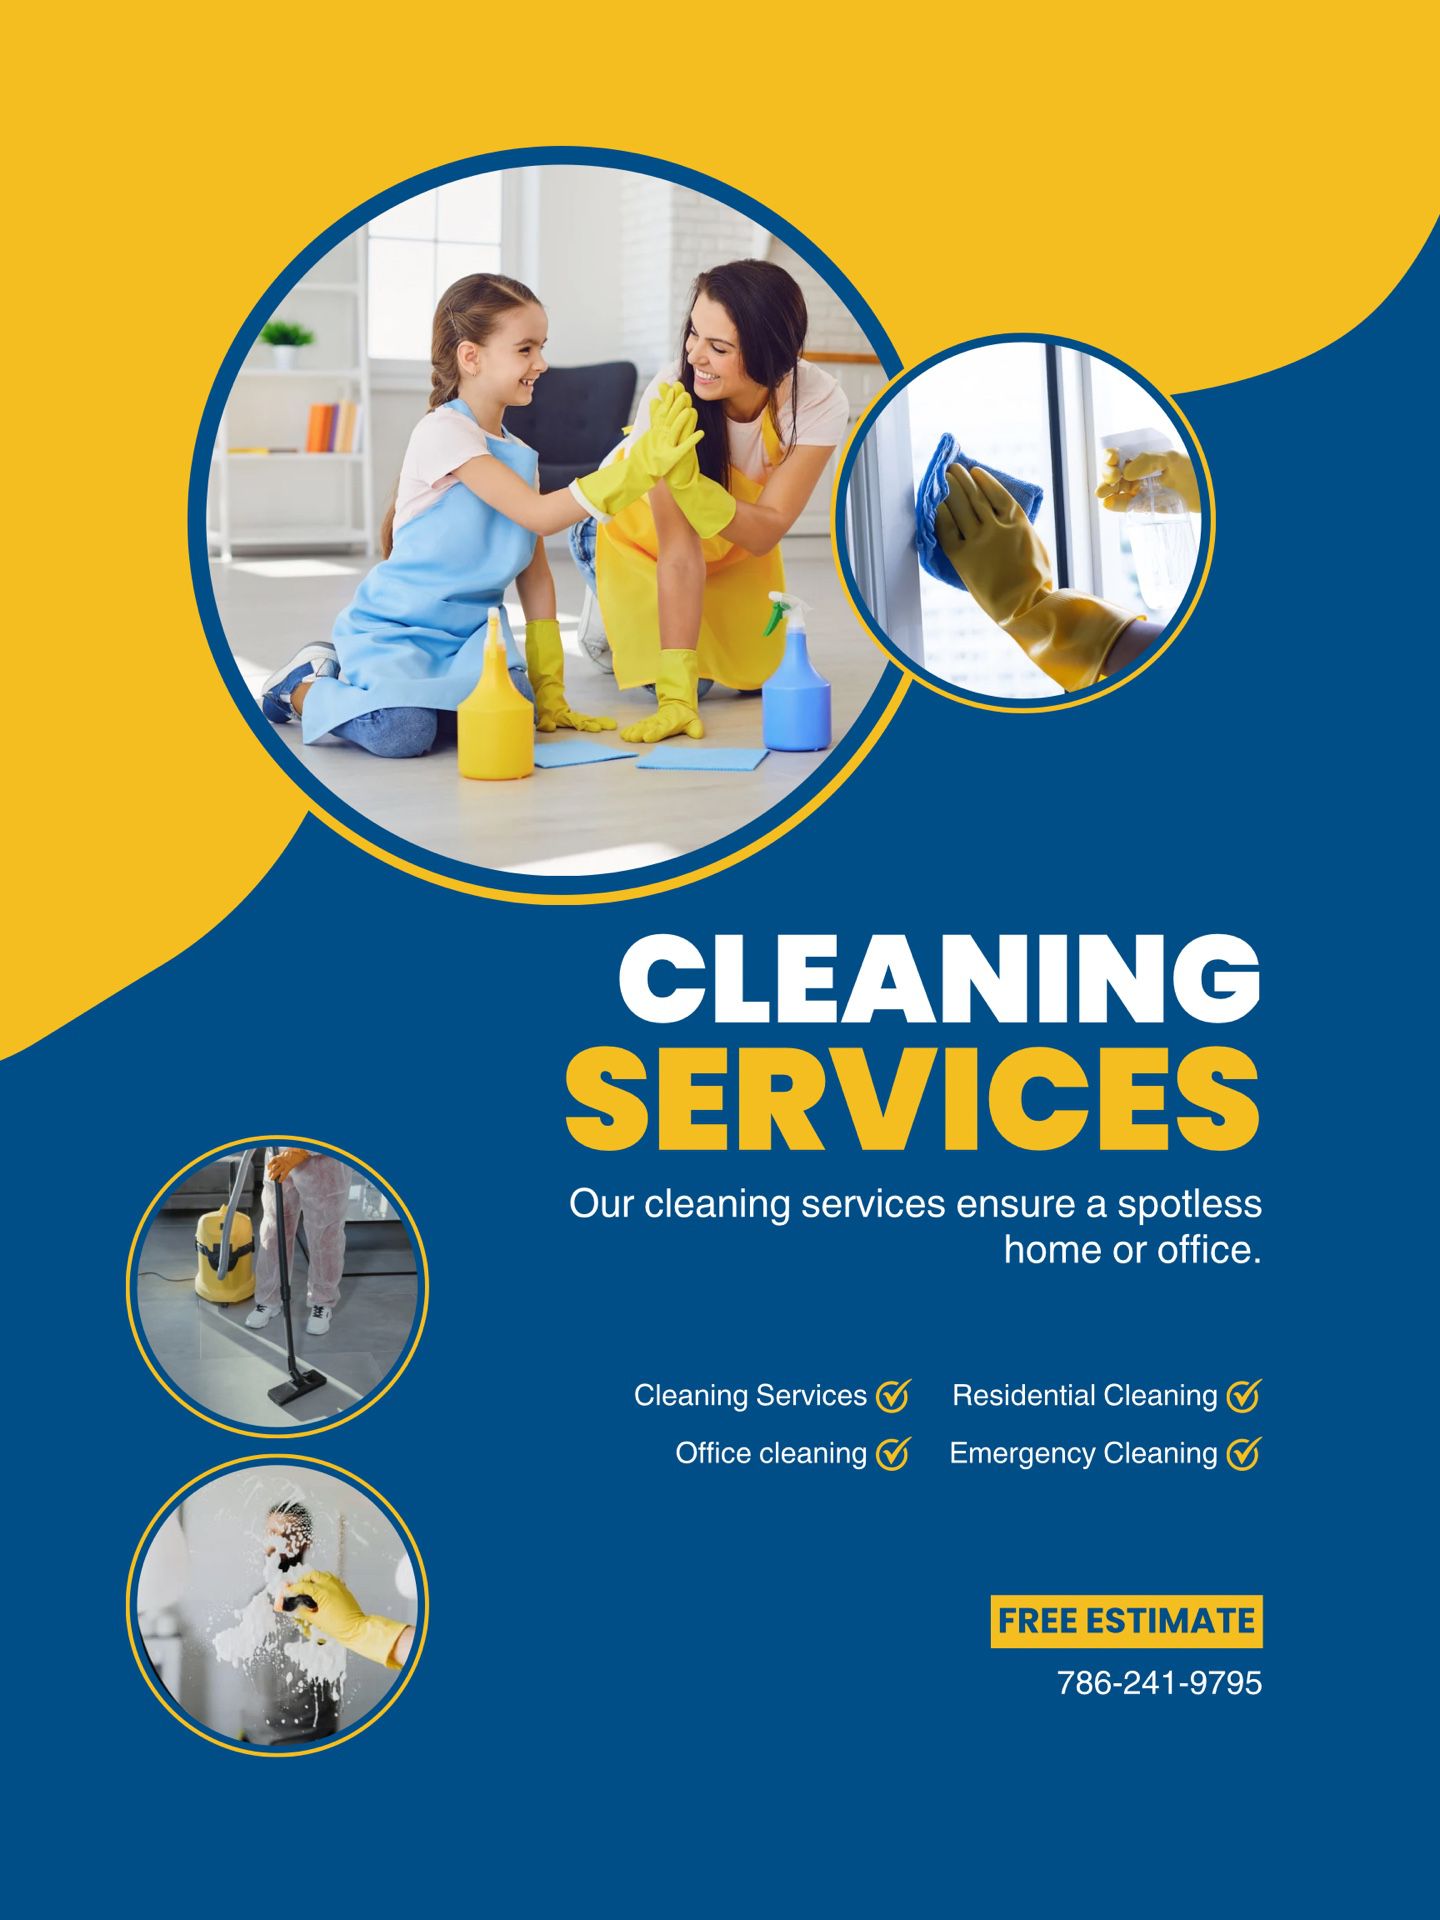 CLEANING SERVICE/SERVICIO DE LIMPIEZA